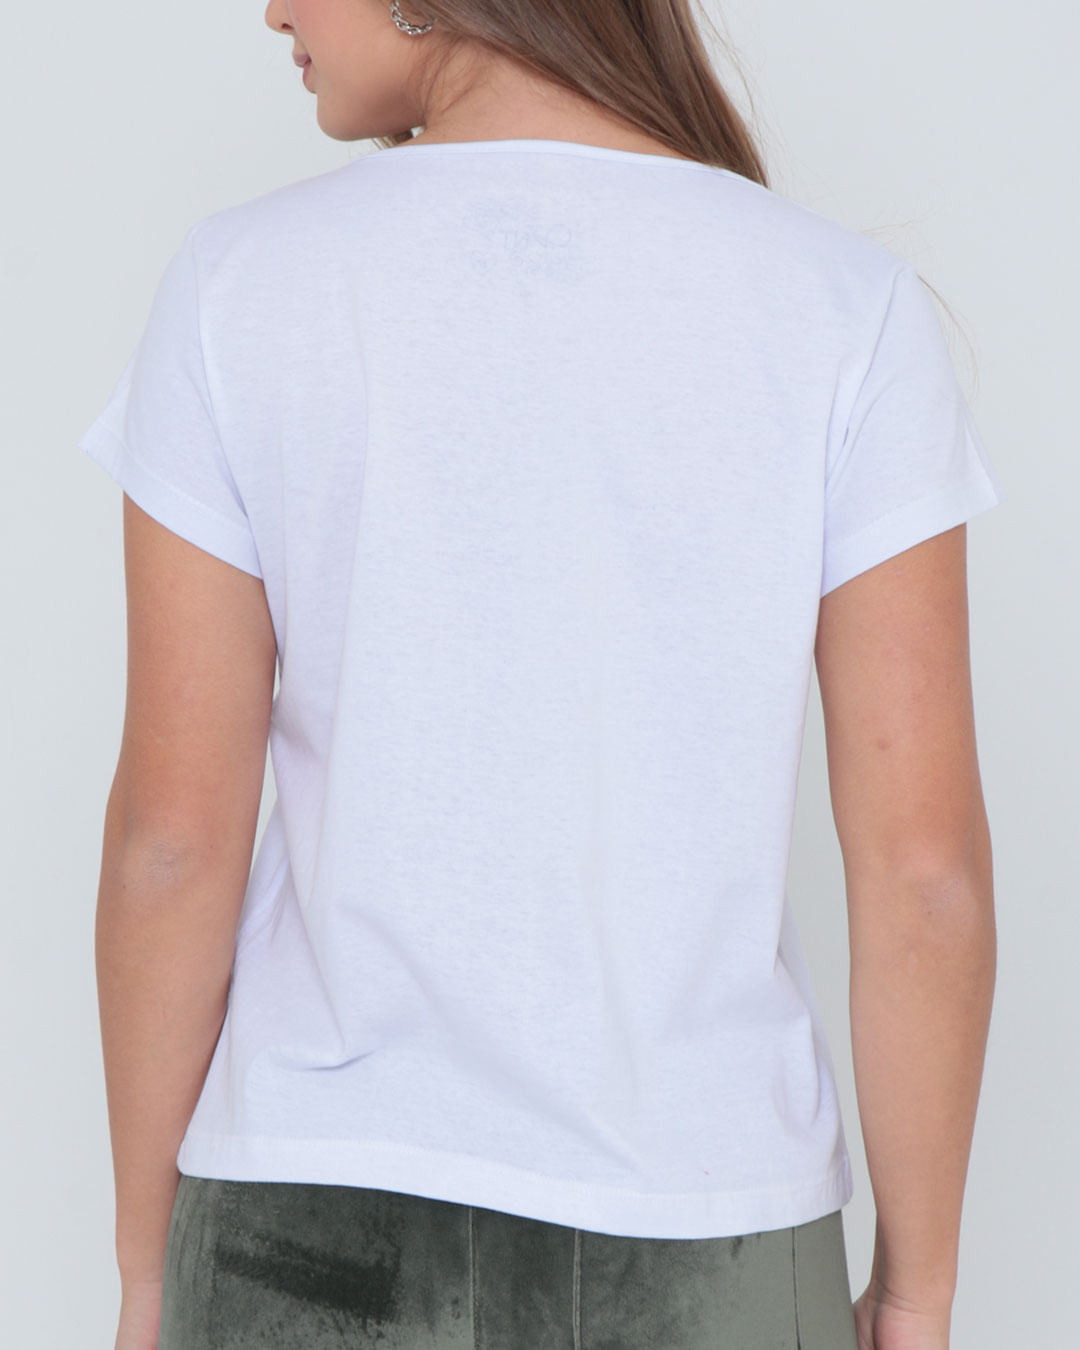 Camiseta-Bco-Silk-Muse-3244-P12---Branco